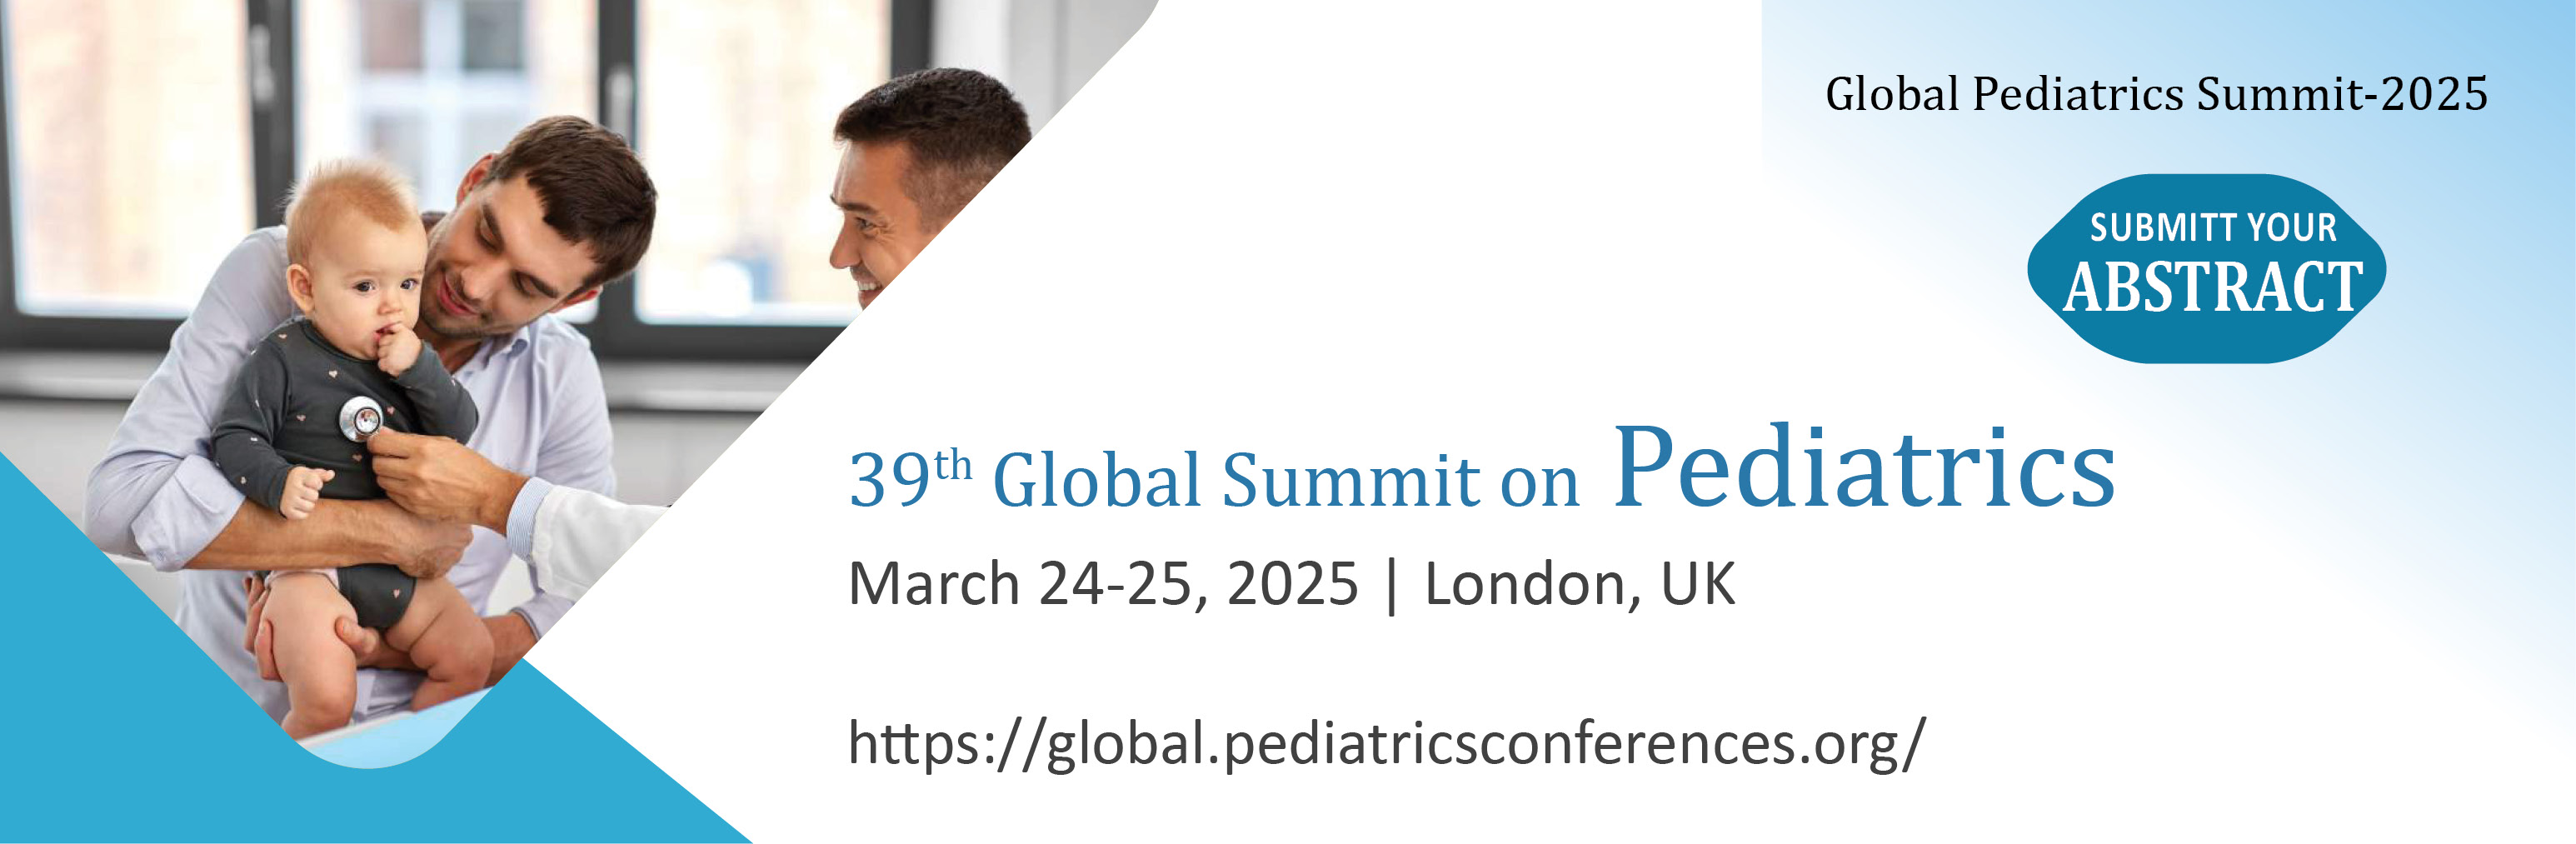 GLOBAL PEDIATRICS SUMMIT-2025Global Pediatrics Summit-2025